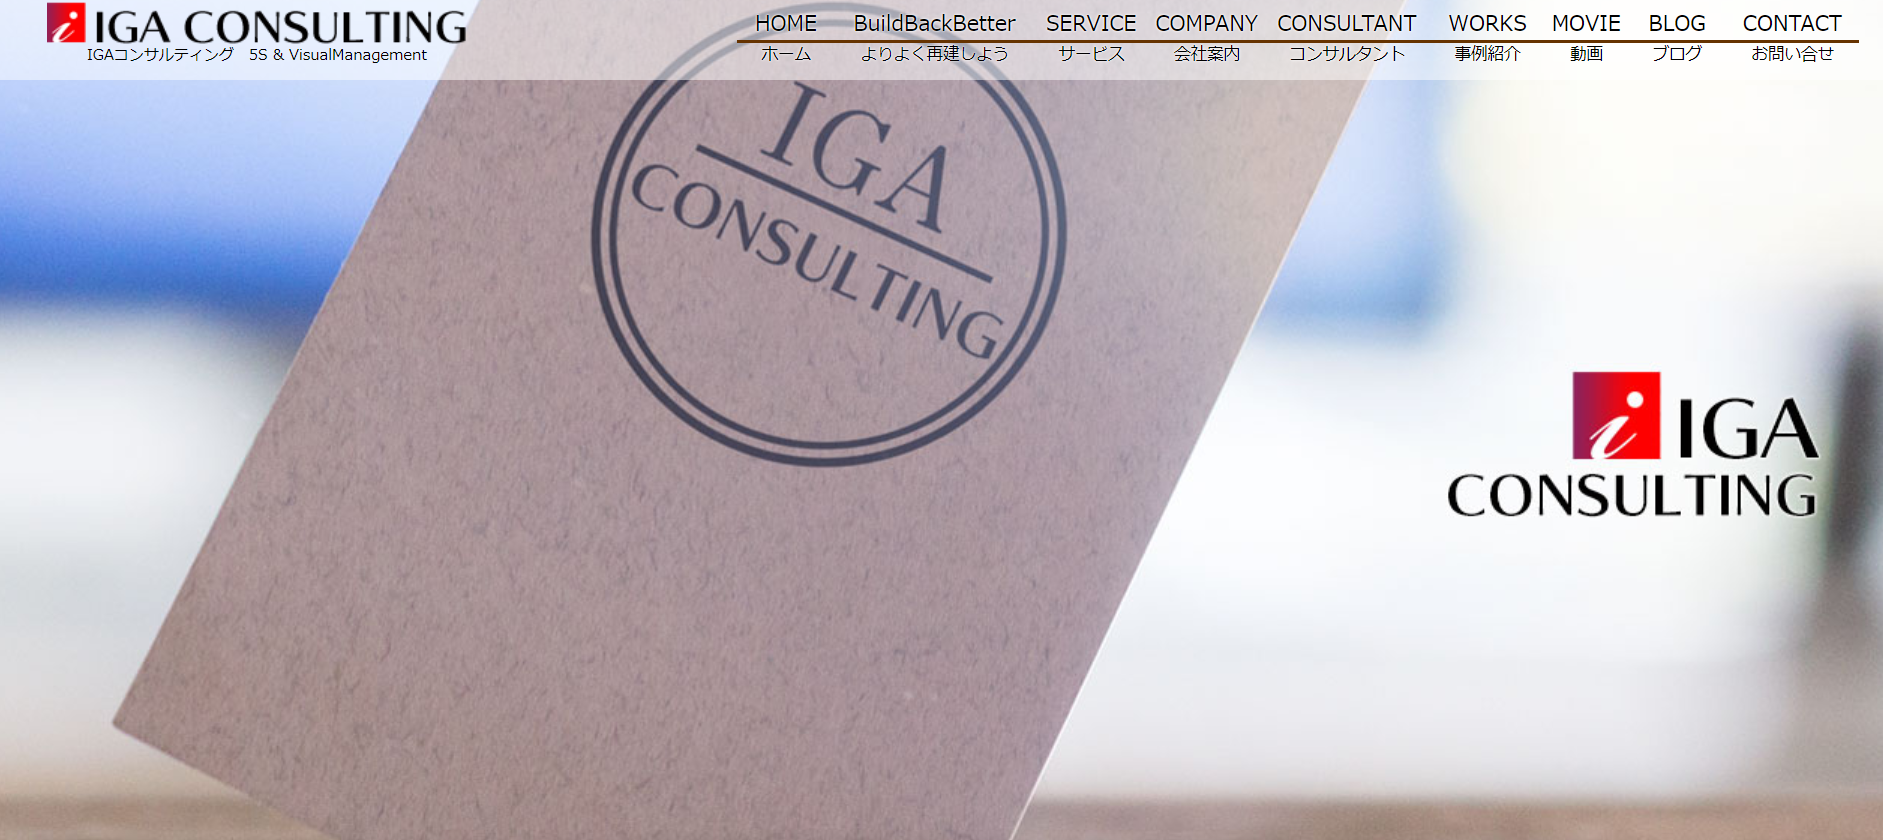 株式会社IGA コンサルティングの株式会社IGA コンサルティングサービス